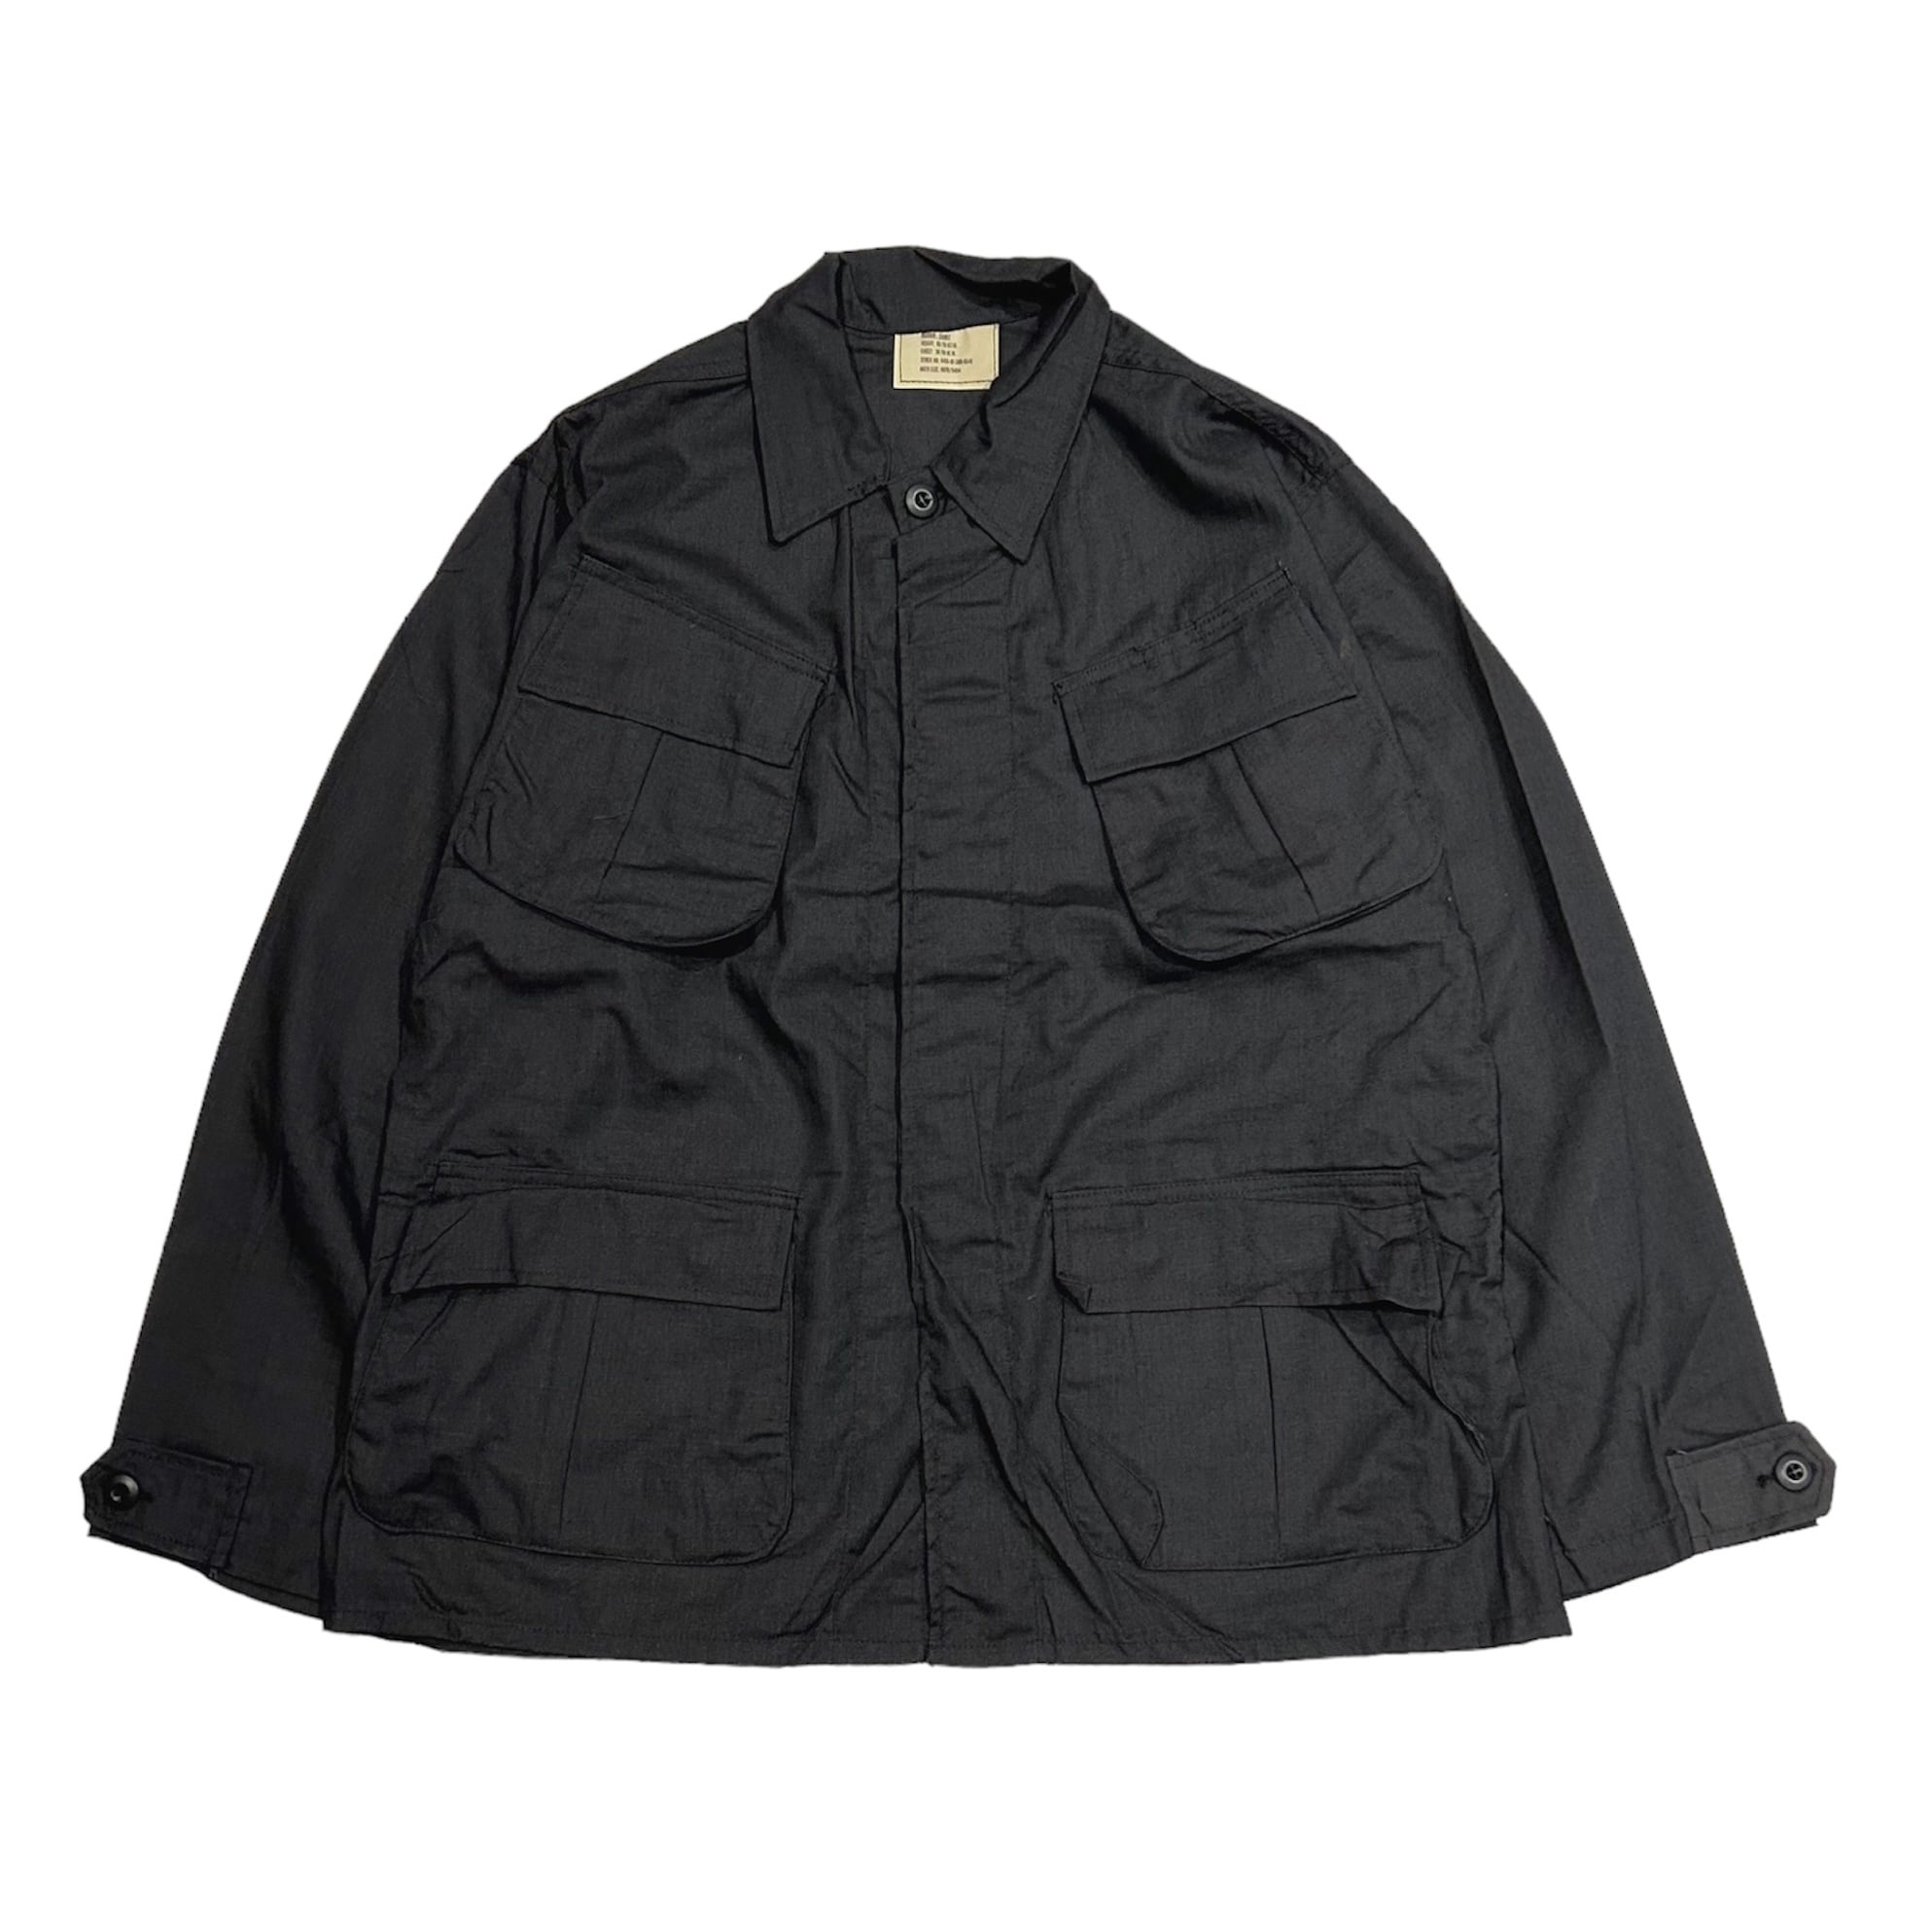 Jungle Fatigue Duck Jacket (black)Mサイズ